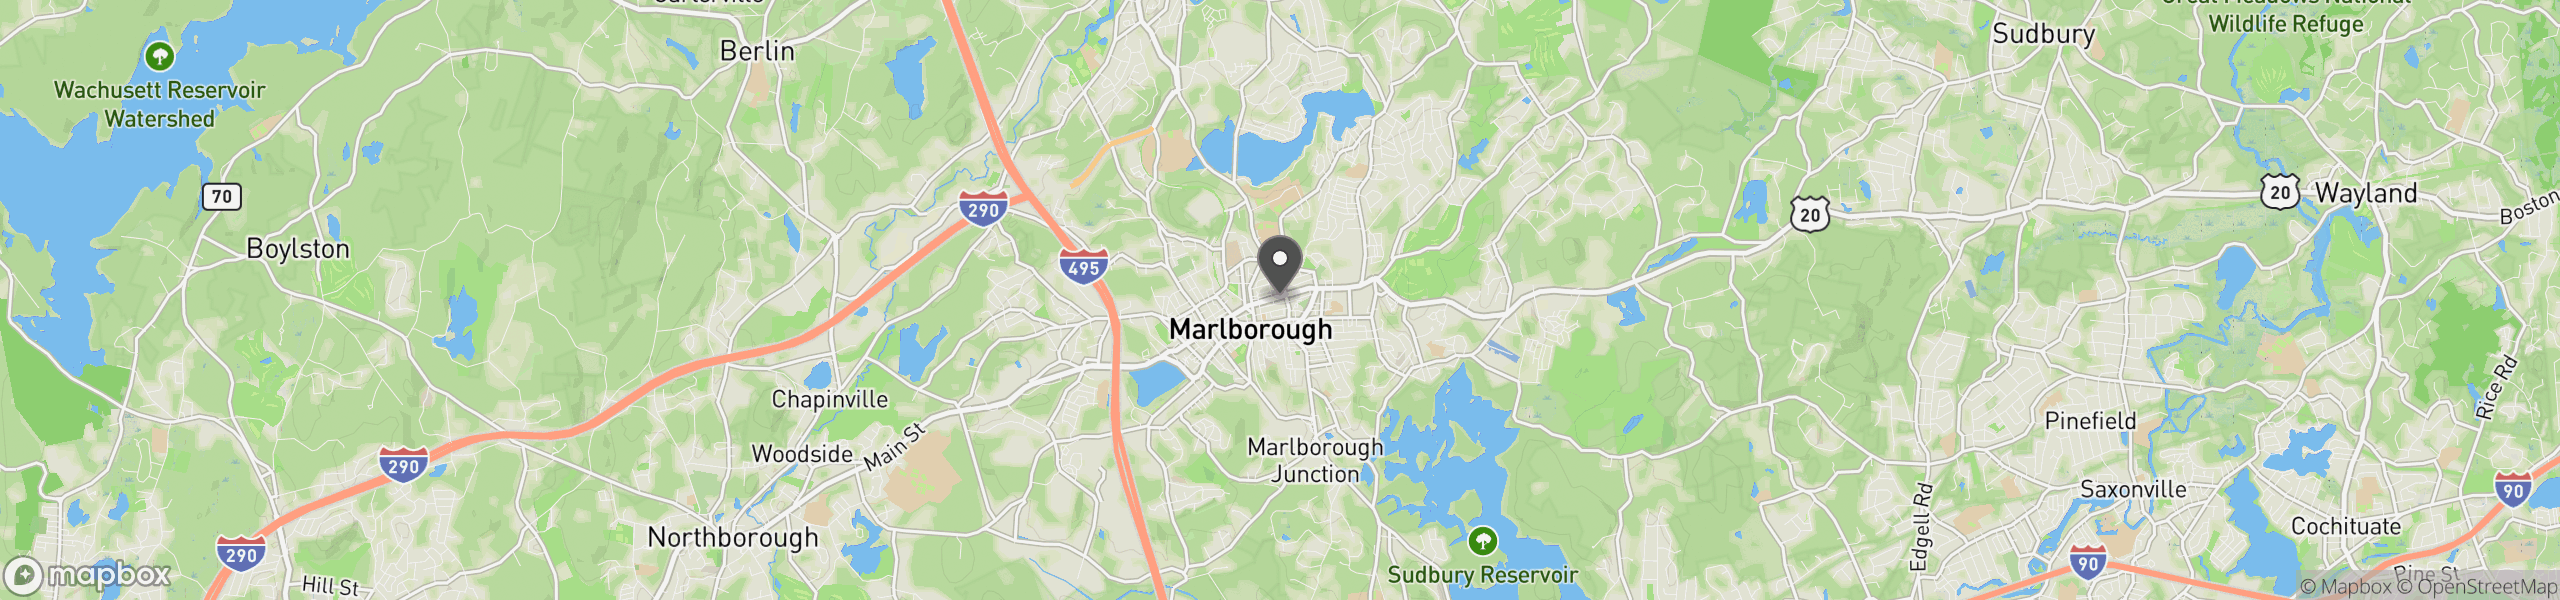 Marlborough, MA